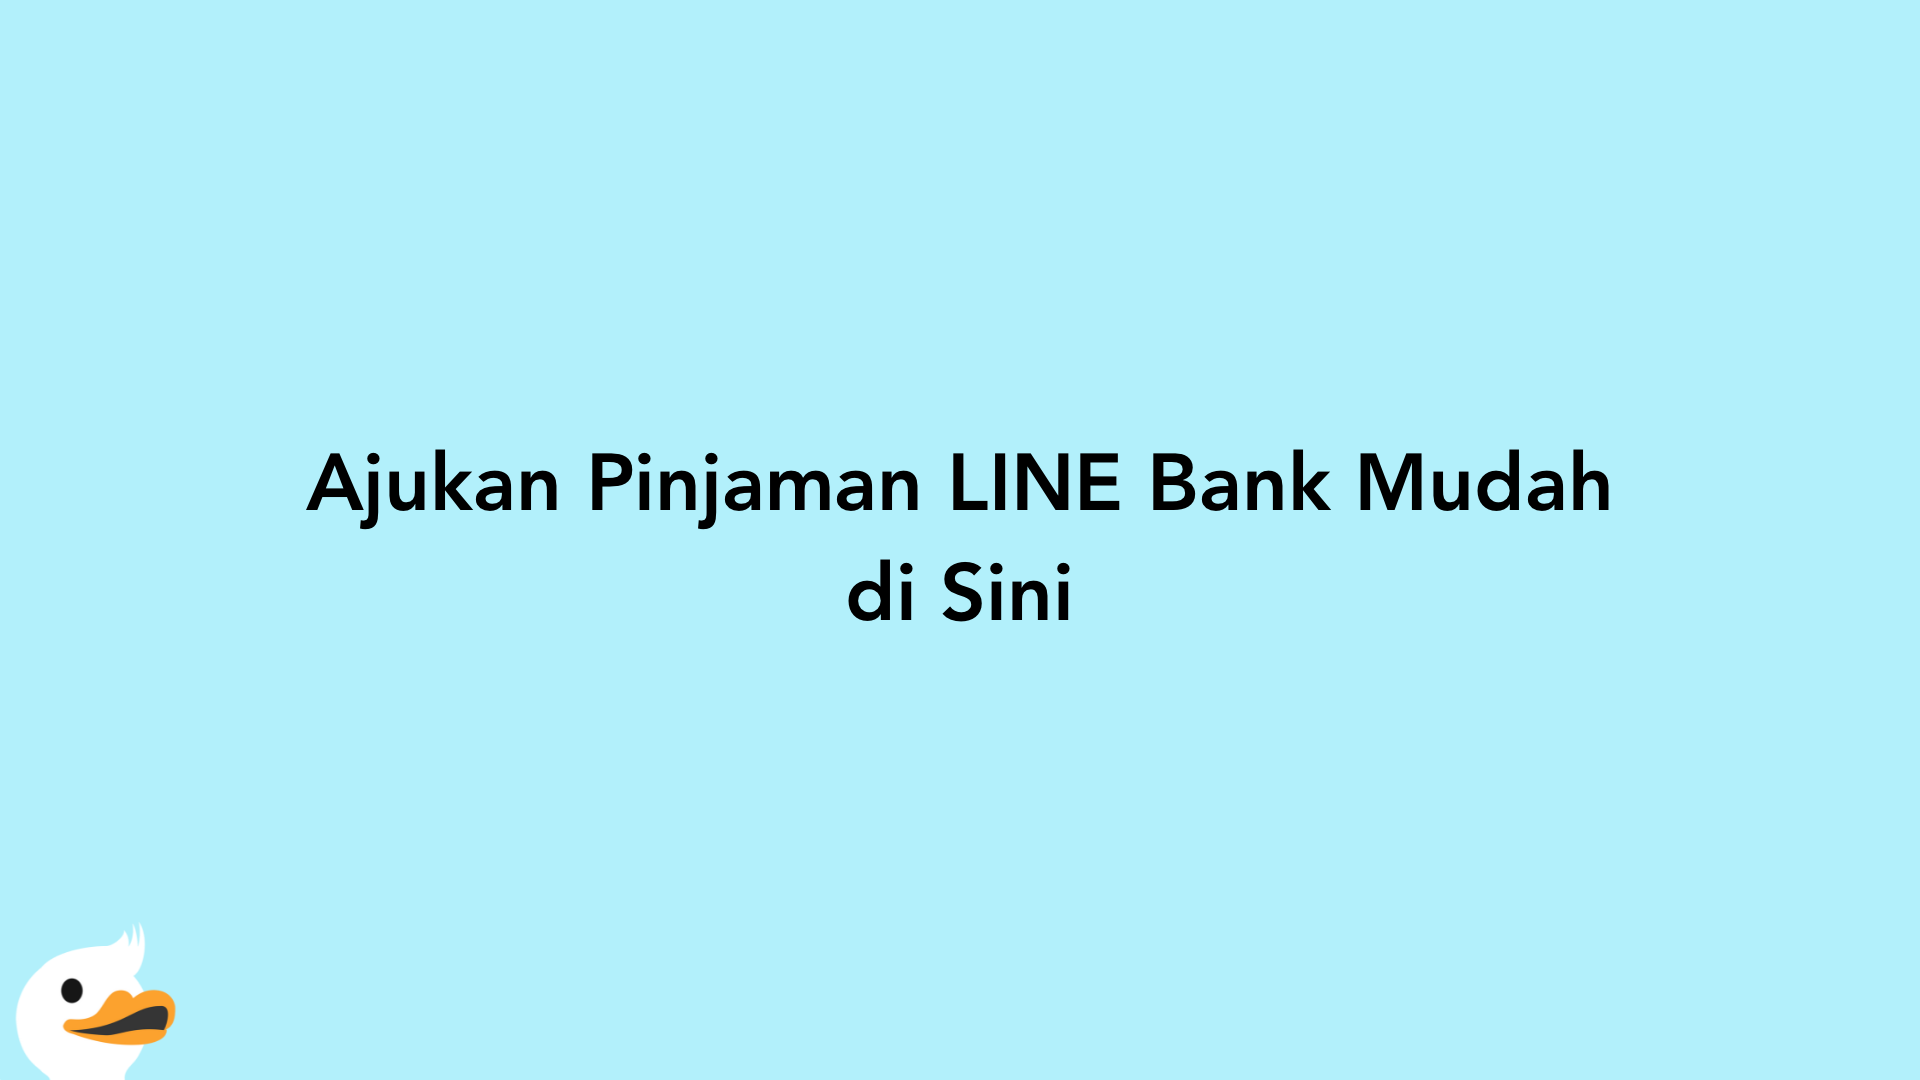 Ajukan Pinjaman LINE Bank Mudah di Sini